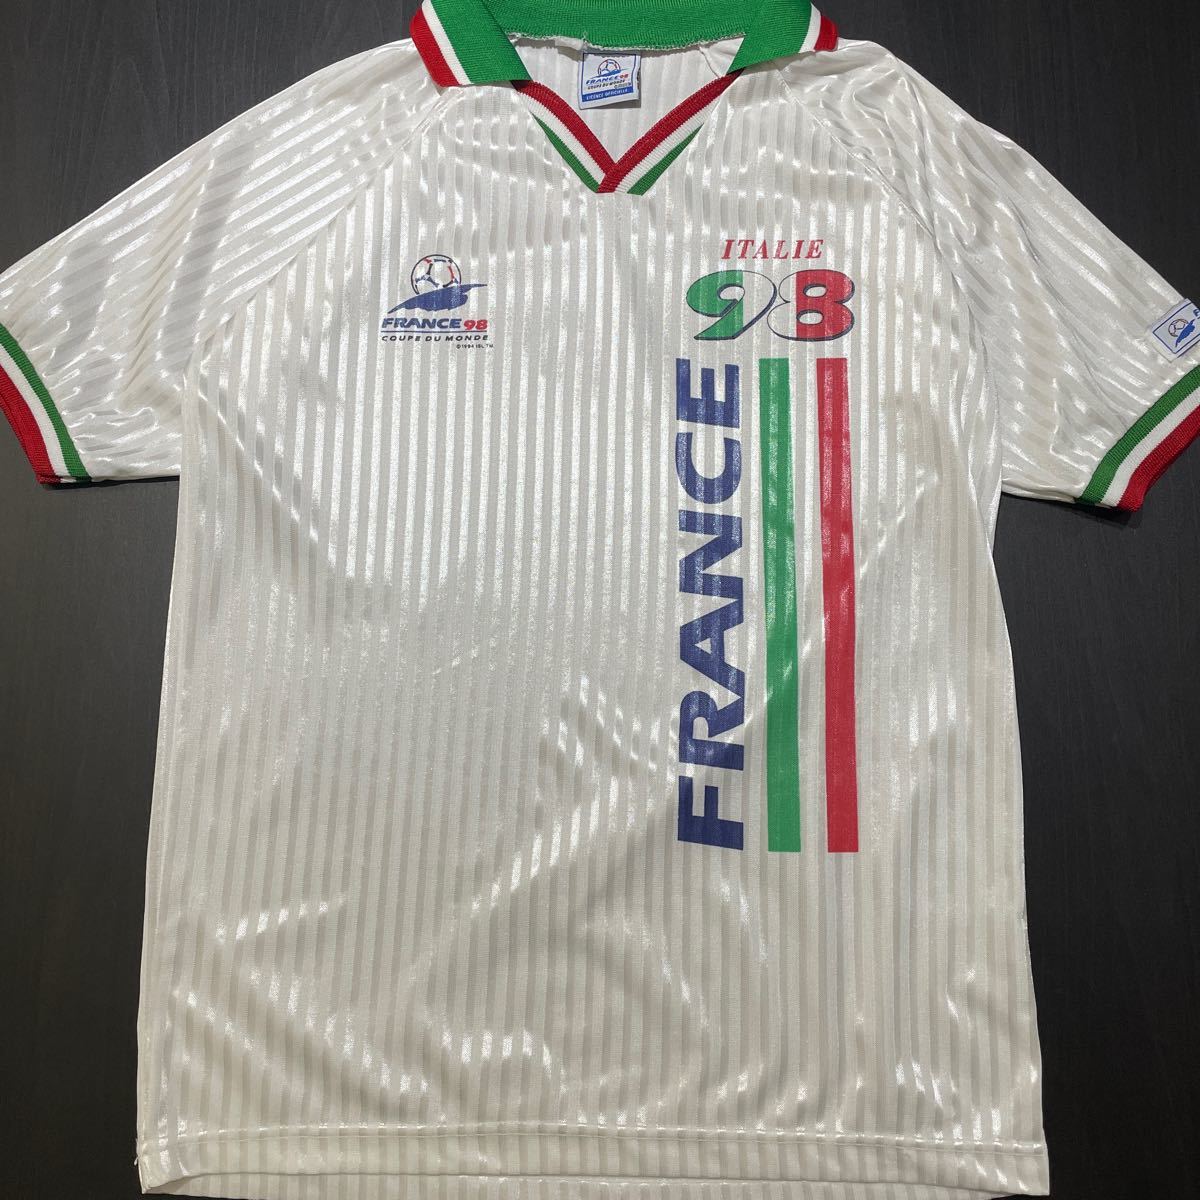 98年 フランス ワールドカップ FIFA イタリア ユニフォーム ゲームシャツ サッカーシャツ vintage ヴィンテージ 90s_画像1